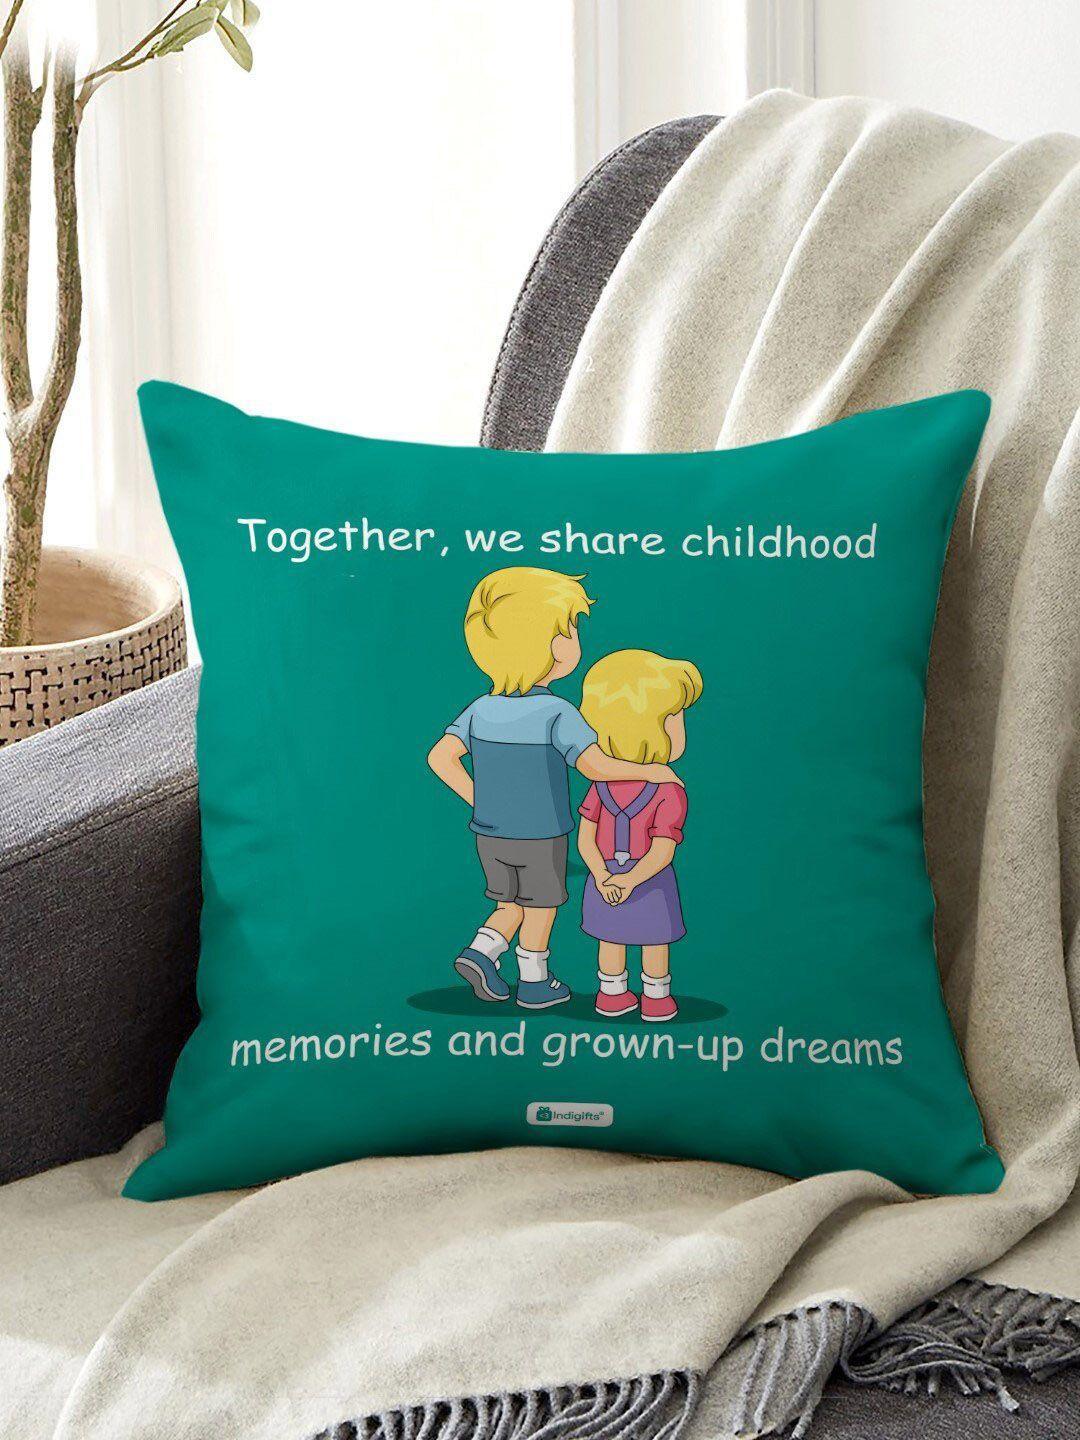 indigifts set of 3 green childhood memories quote printed cushion with ceramic mug & rakhi